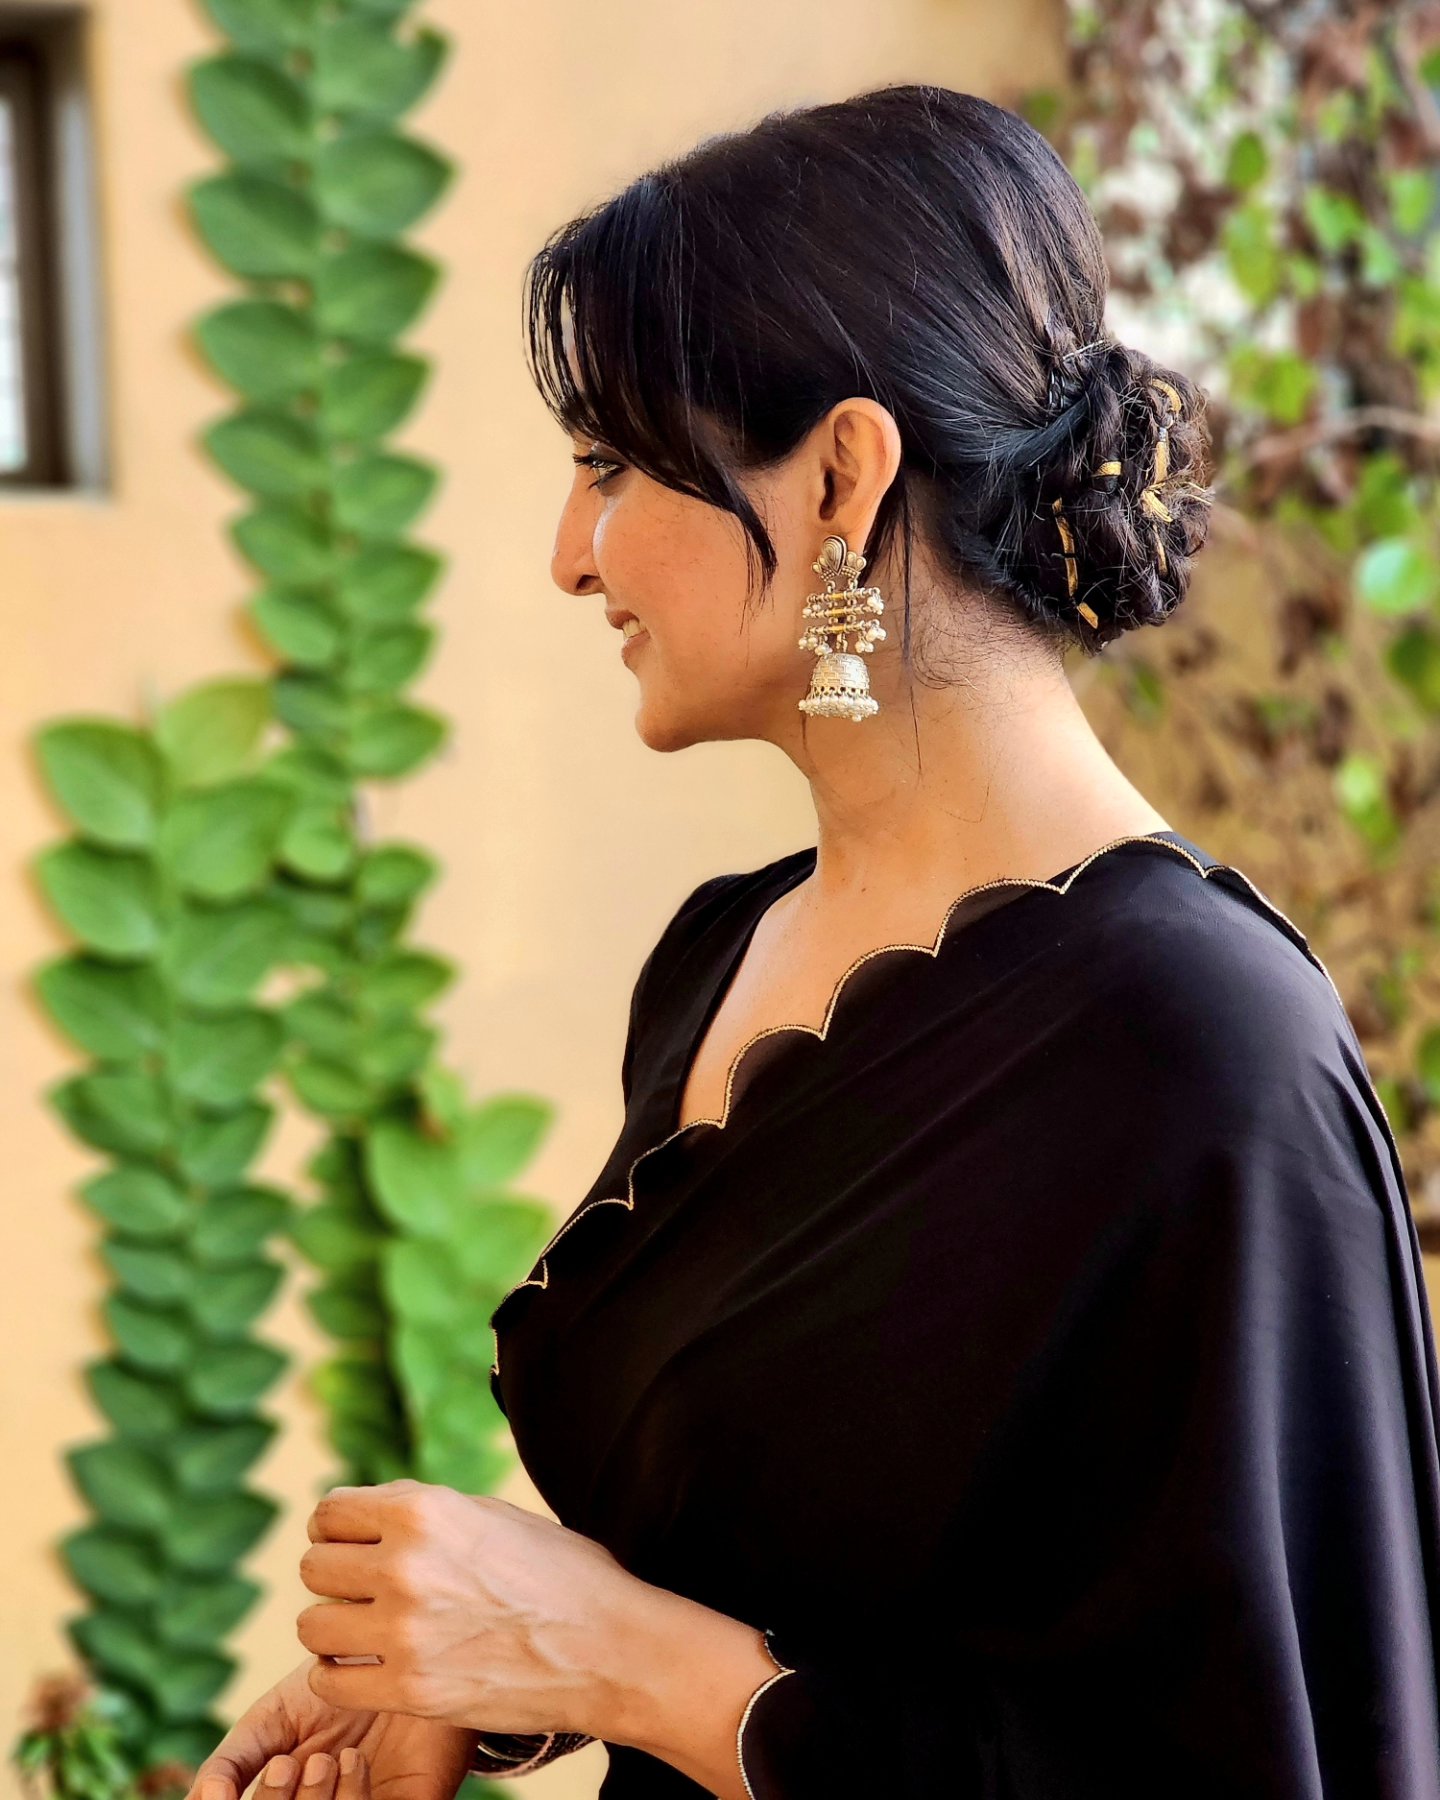 Rahasya Gorak black saree stills at Raja Vaaru Rani Gaaru Pre-Release Event  - South Indian Actress